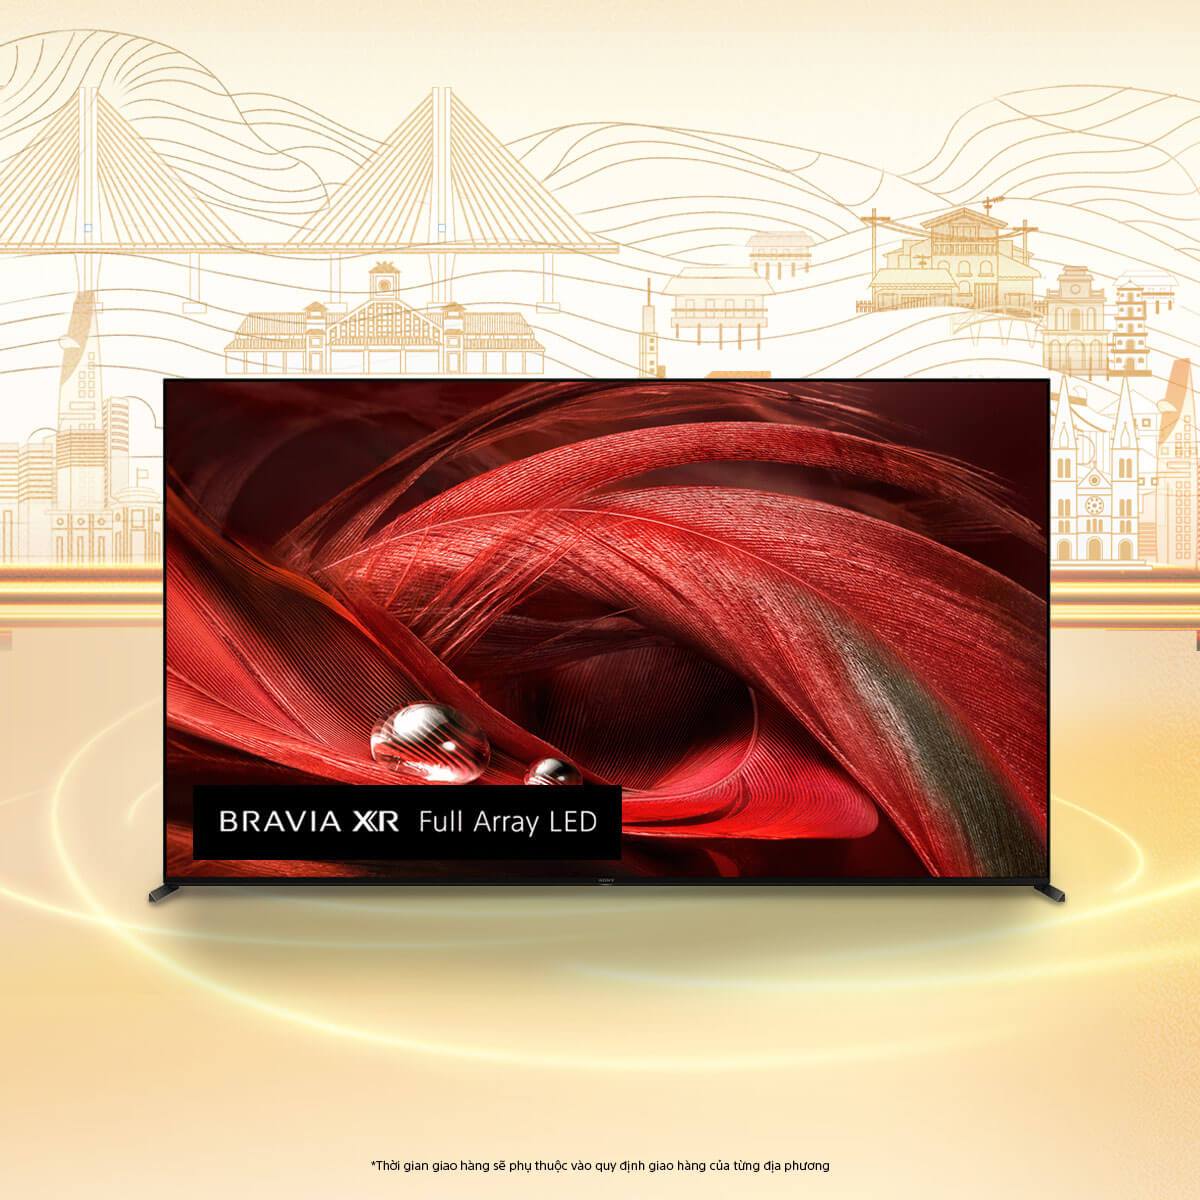 85X95J | BRAVIA XR | Full Array LED | 4K Ultra HD | Dải tần nhạy sáng cao (HDR) | Smart TV (Google TV)